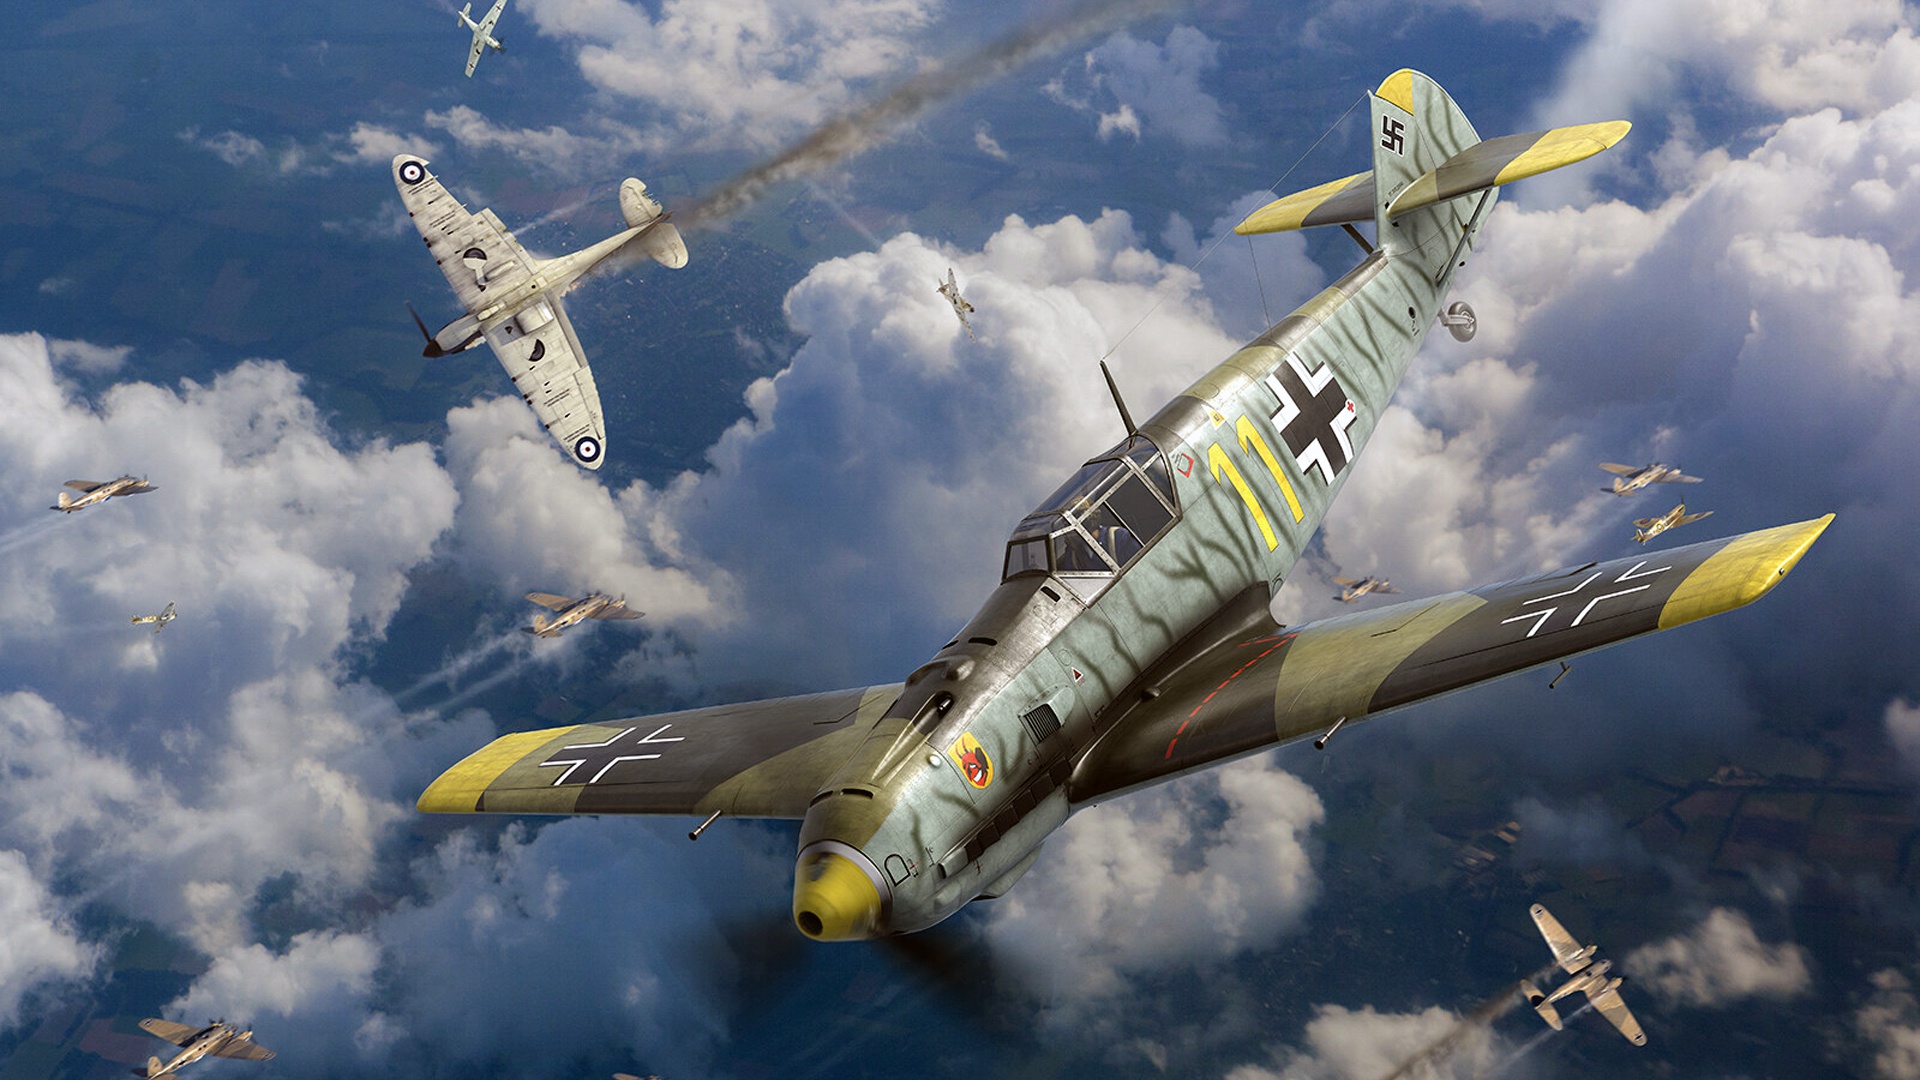 World War Ii Aircraft Airplane Germany Luftwaffe War Messerschmitt Bf 109 Battle Of Britain 1920x1080